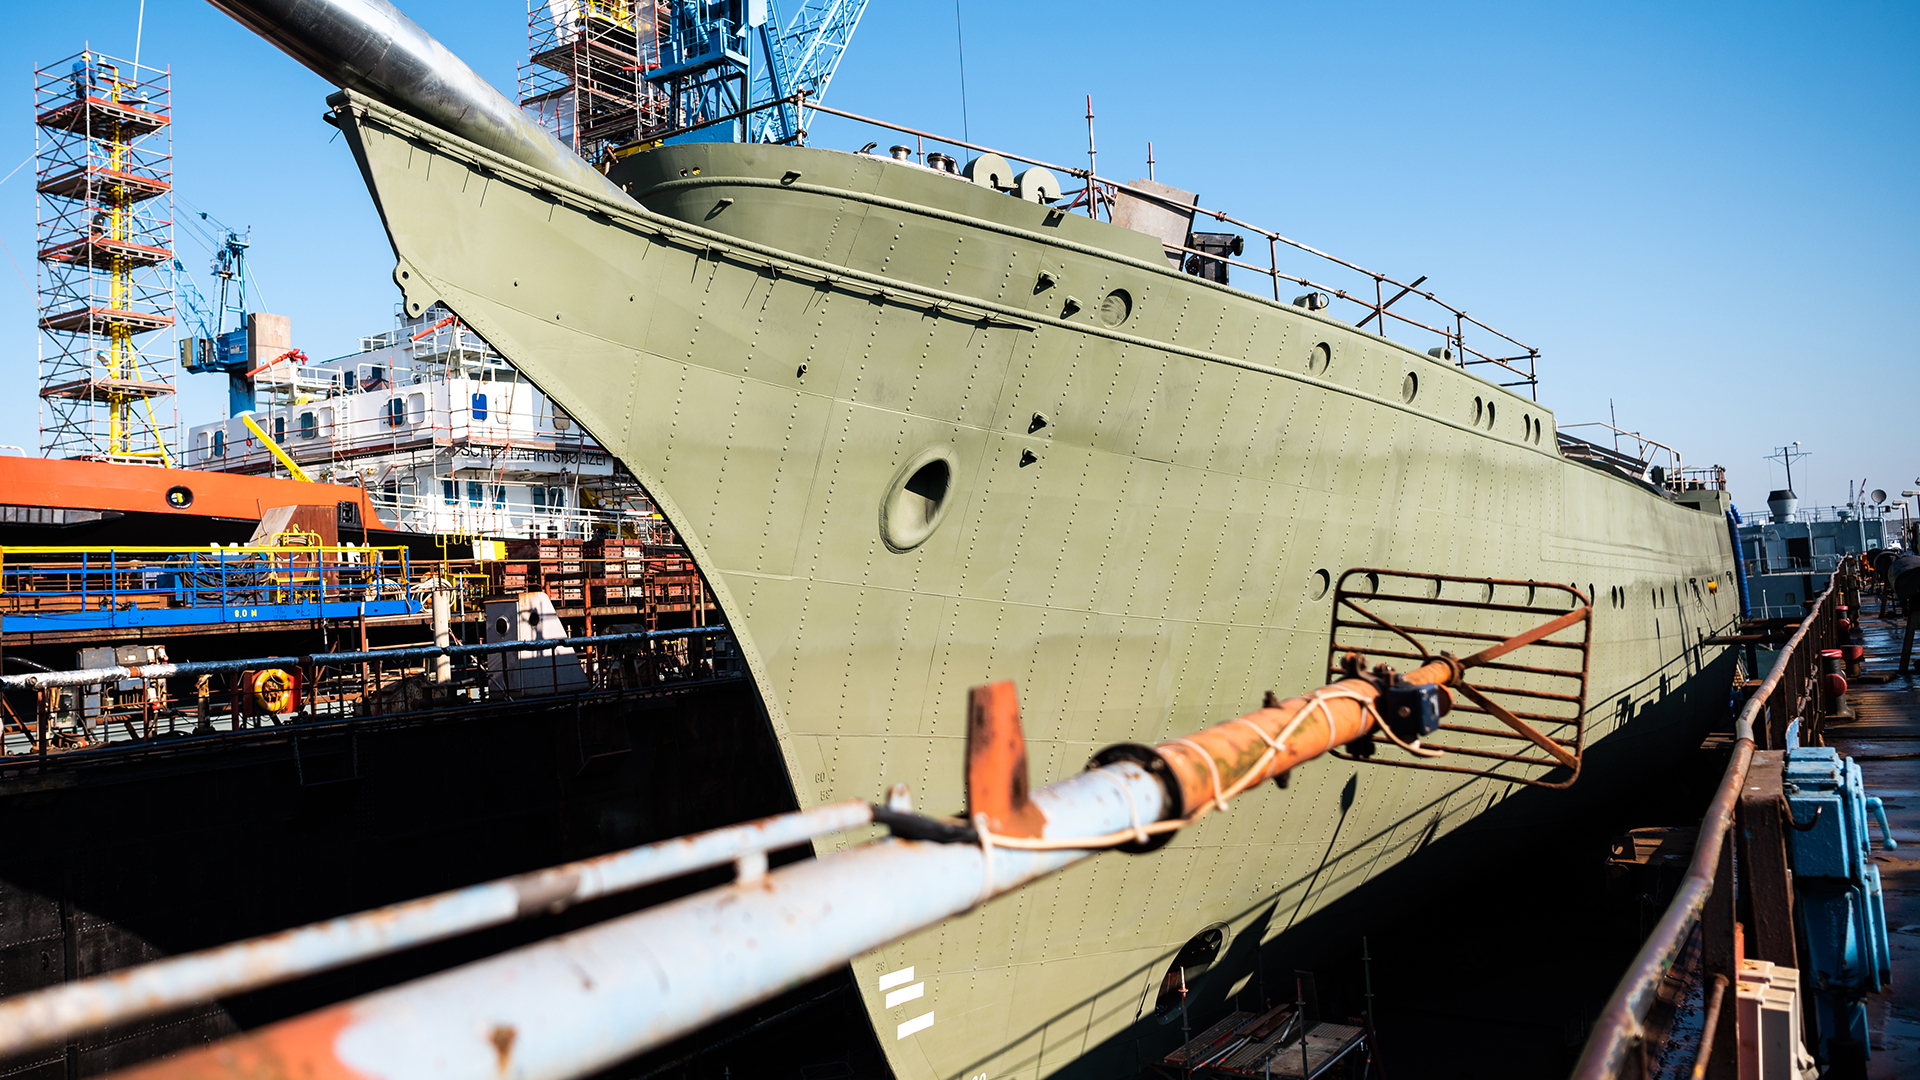 Das Marine-Segelschulschiff "Gorch Fock" liegt in einem Dock der Bredo-Werft. | picture alliance/dpa